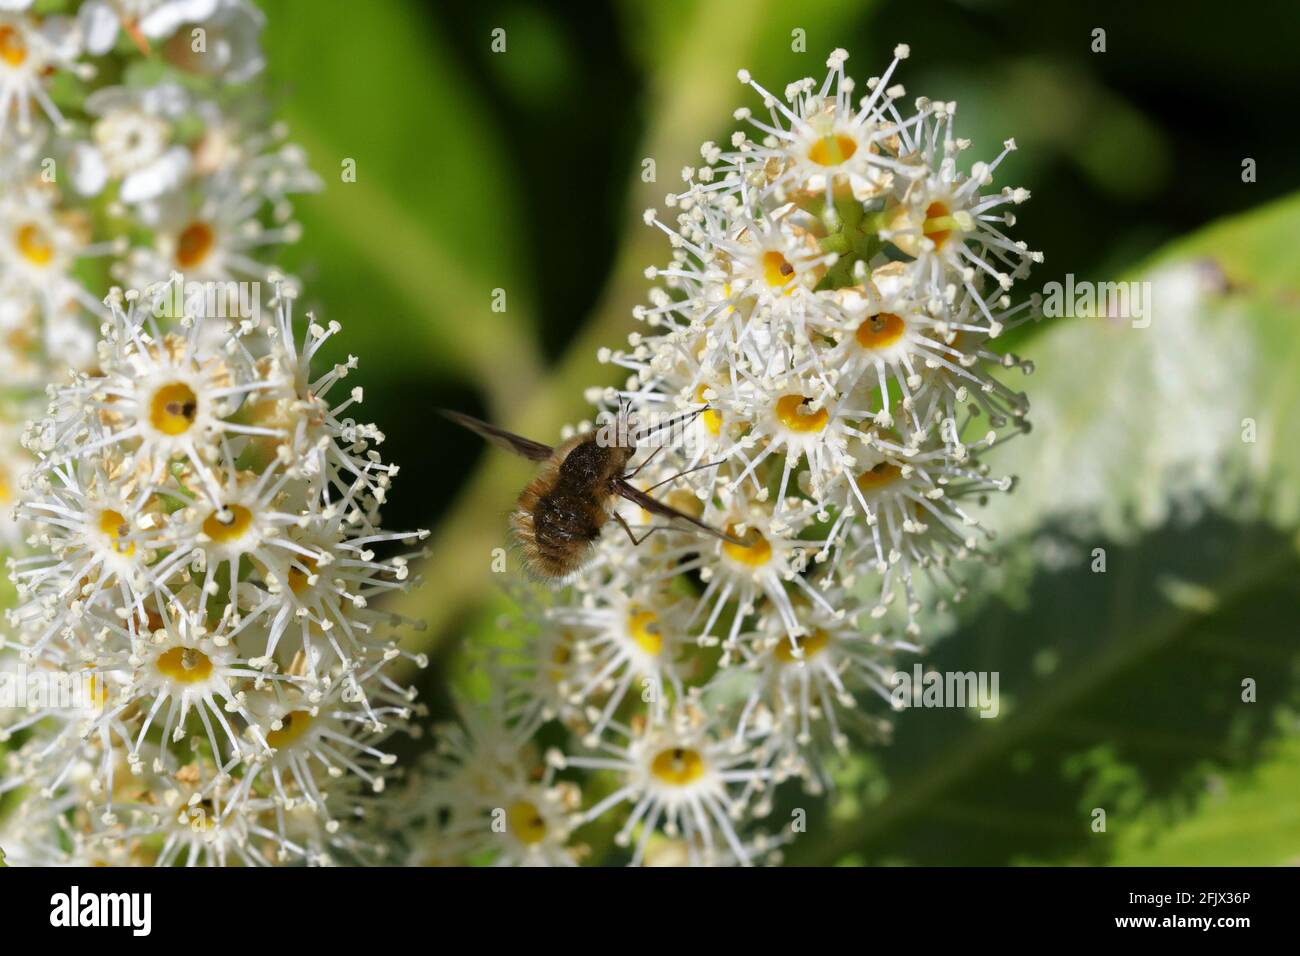 Eine Bienenfliege mit dunklen Kanten (Bombylius major), die sich von den weißen Blüten eines Kirschlaurels (Prunus laurocerasus) ernährt Stockfoto